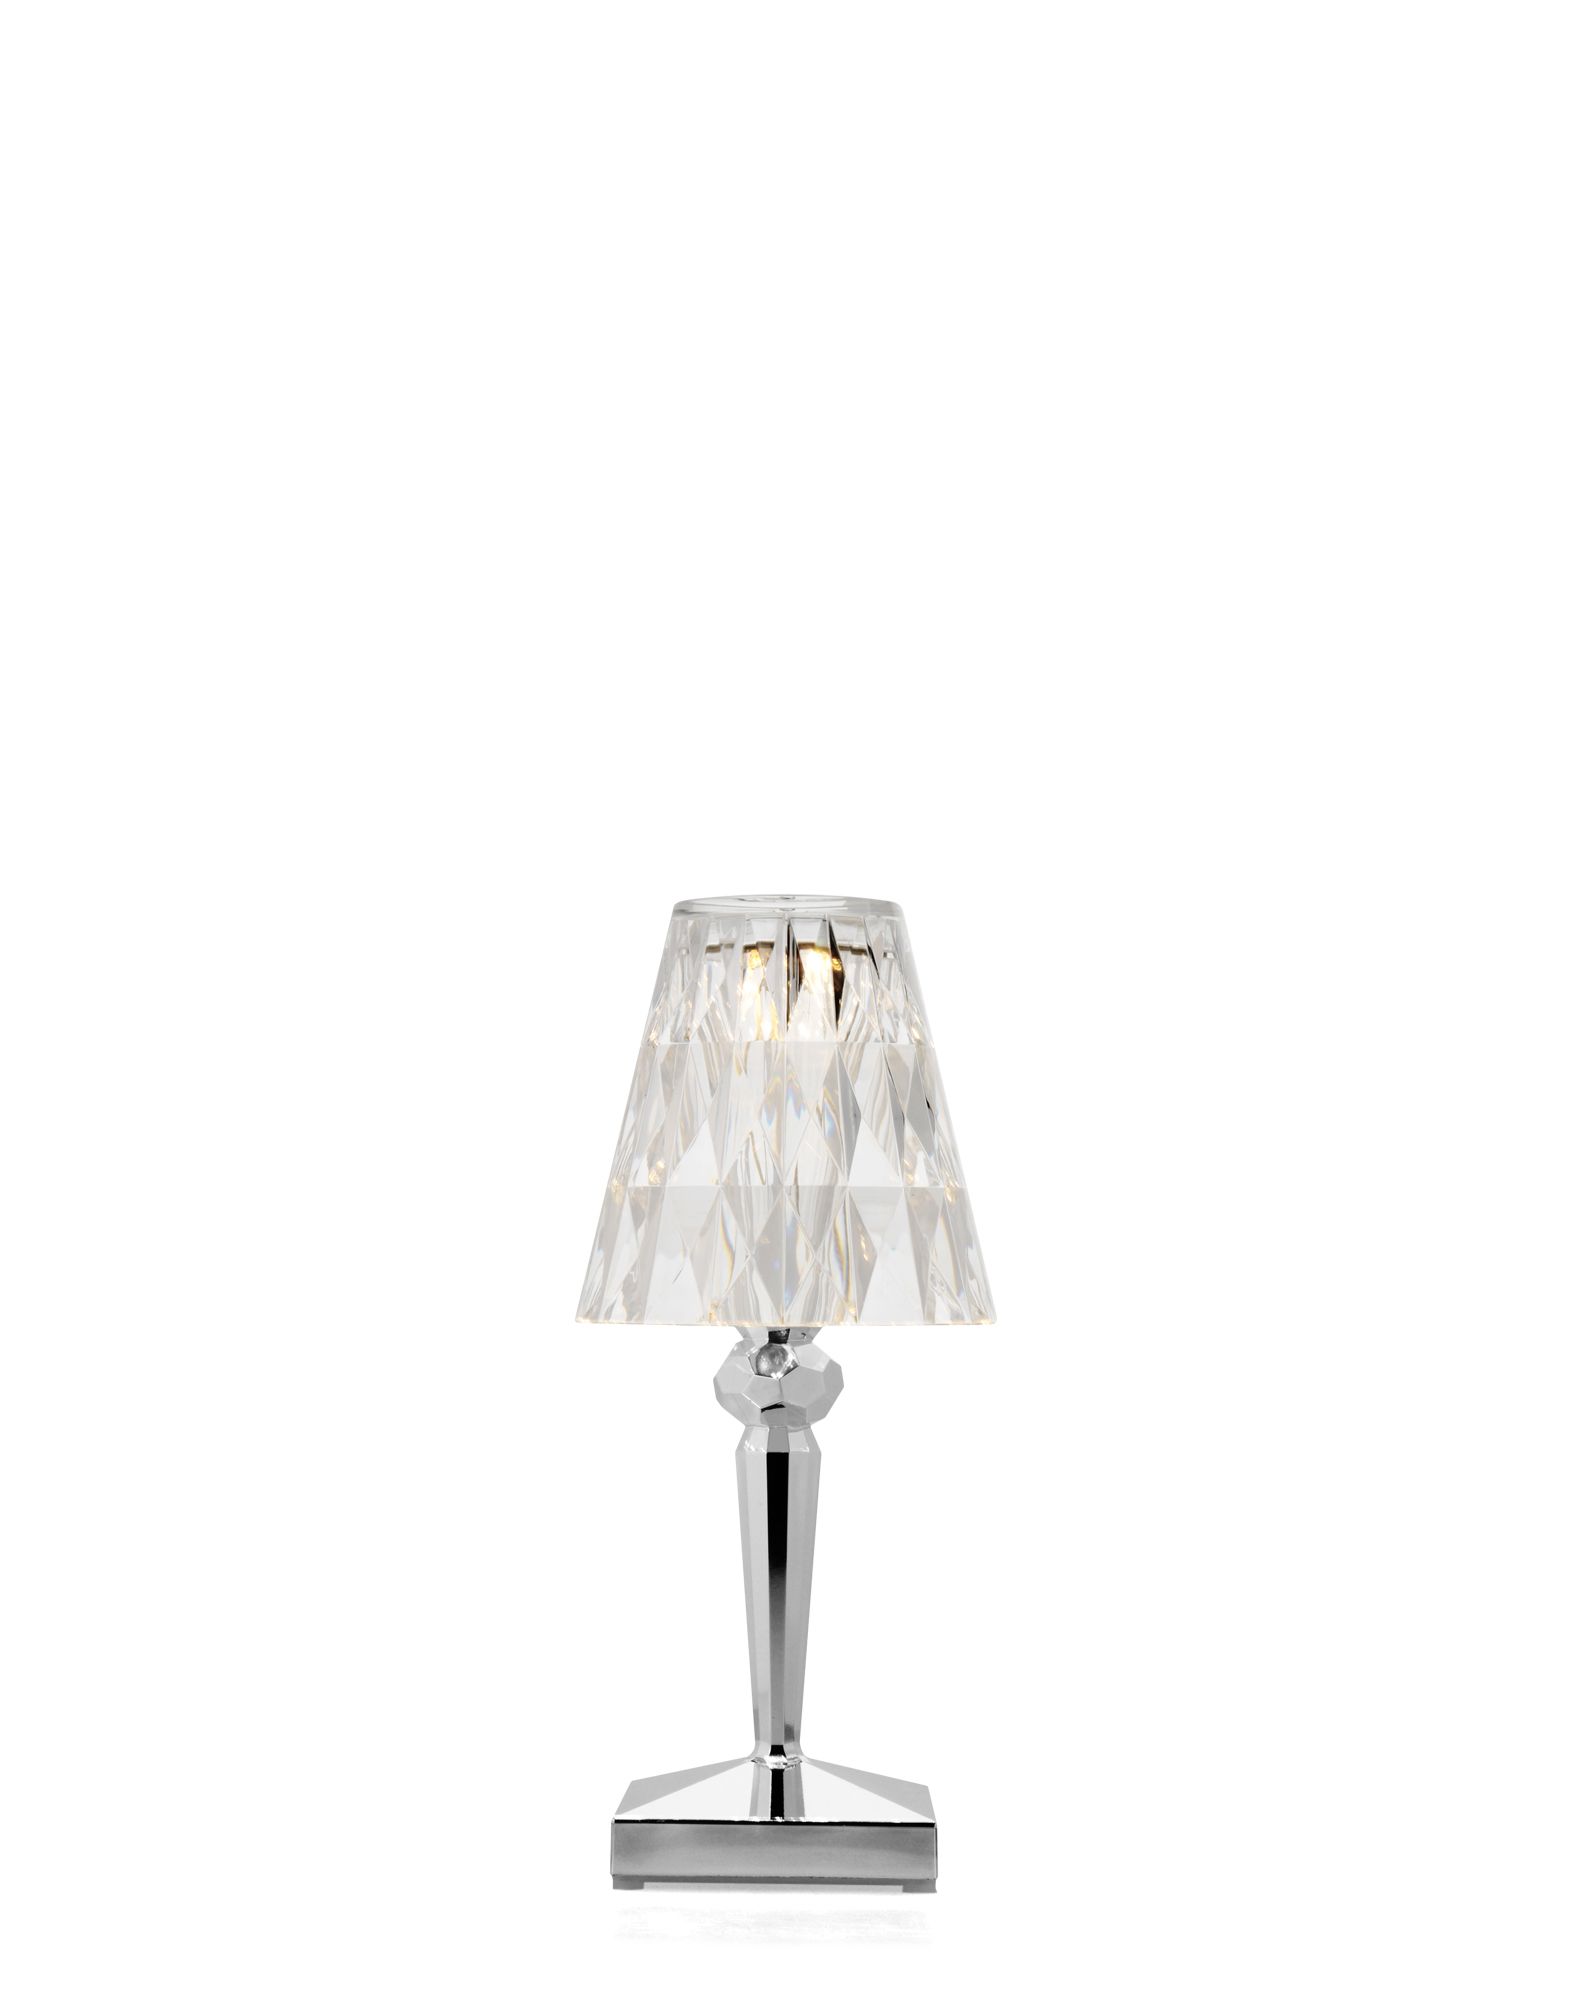 Kartell table lamp 9145 Battery chrome